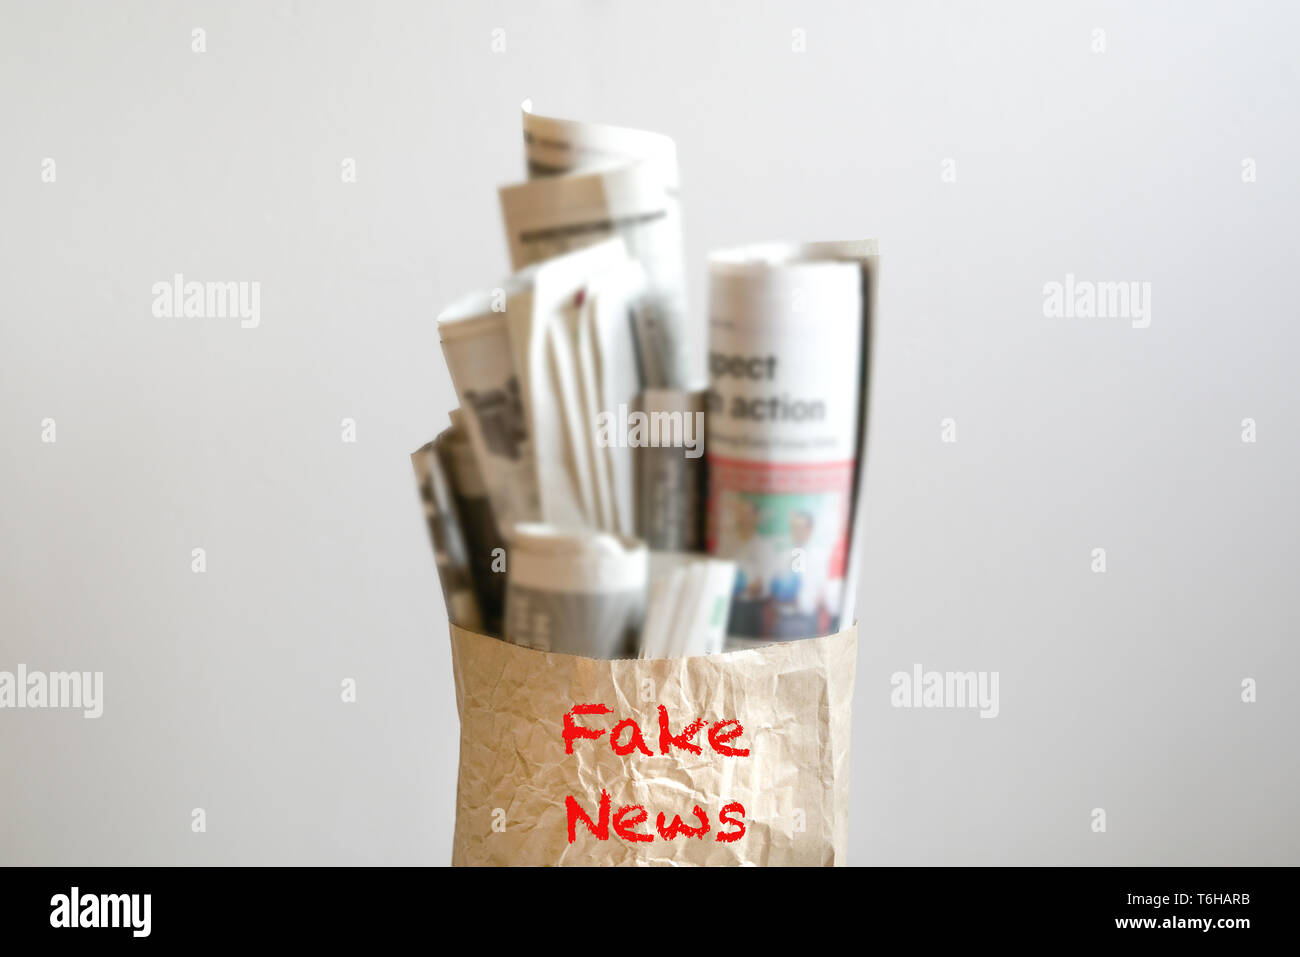 Fake news concept - mot 'Fake News' sur sac en papier rempli de journaux Banque D'Images